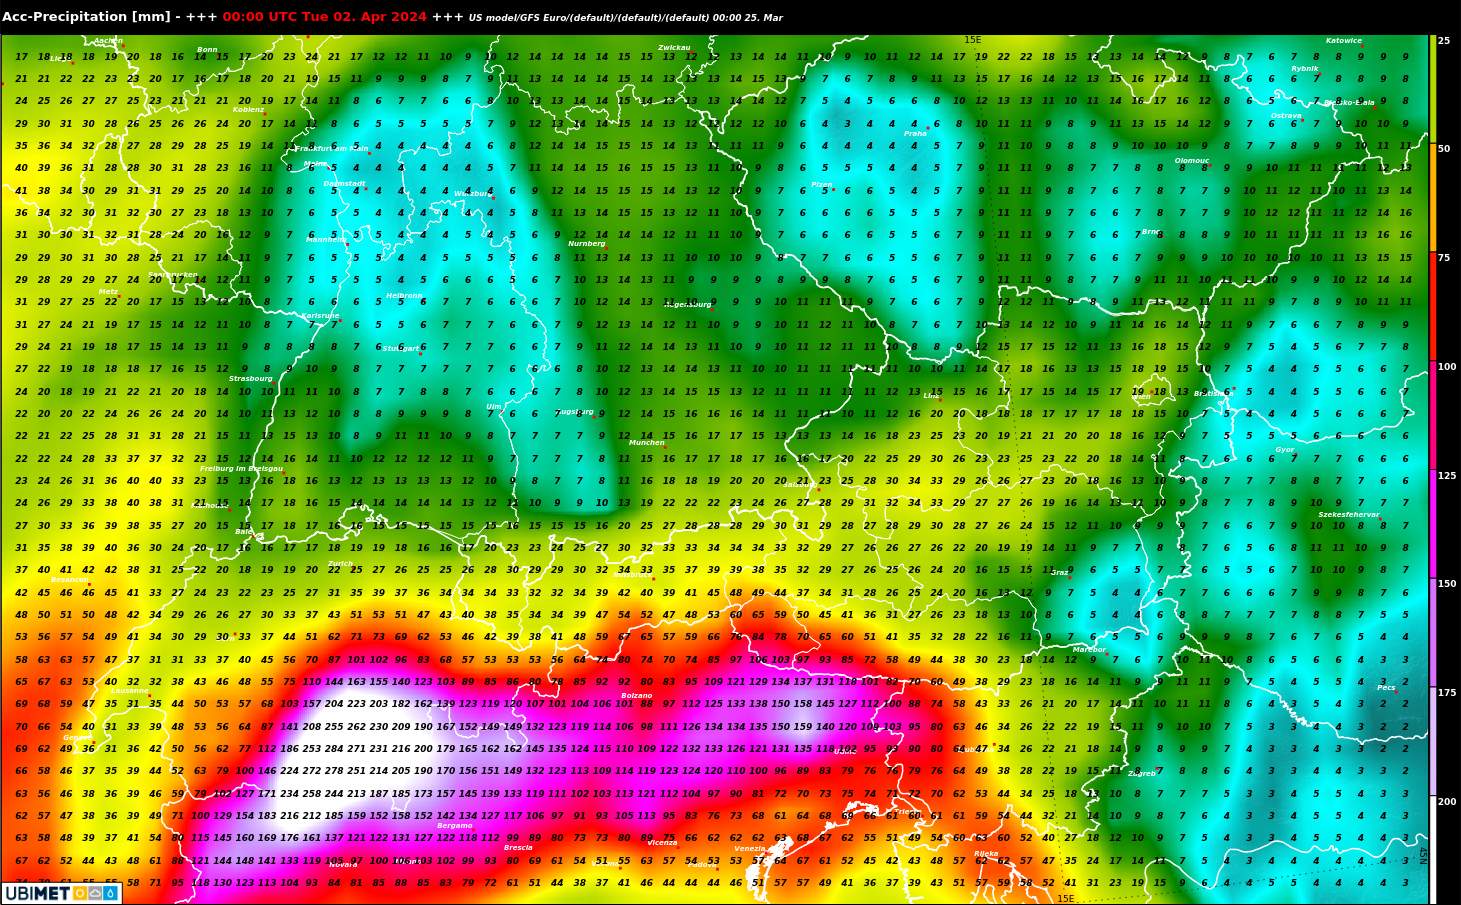 Fig. 4: Somme des précipitations jusqu'après Pâques selon le modèle météo américain GFS; Source: MeteoNews, UBIMET